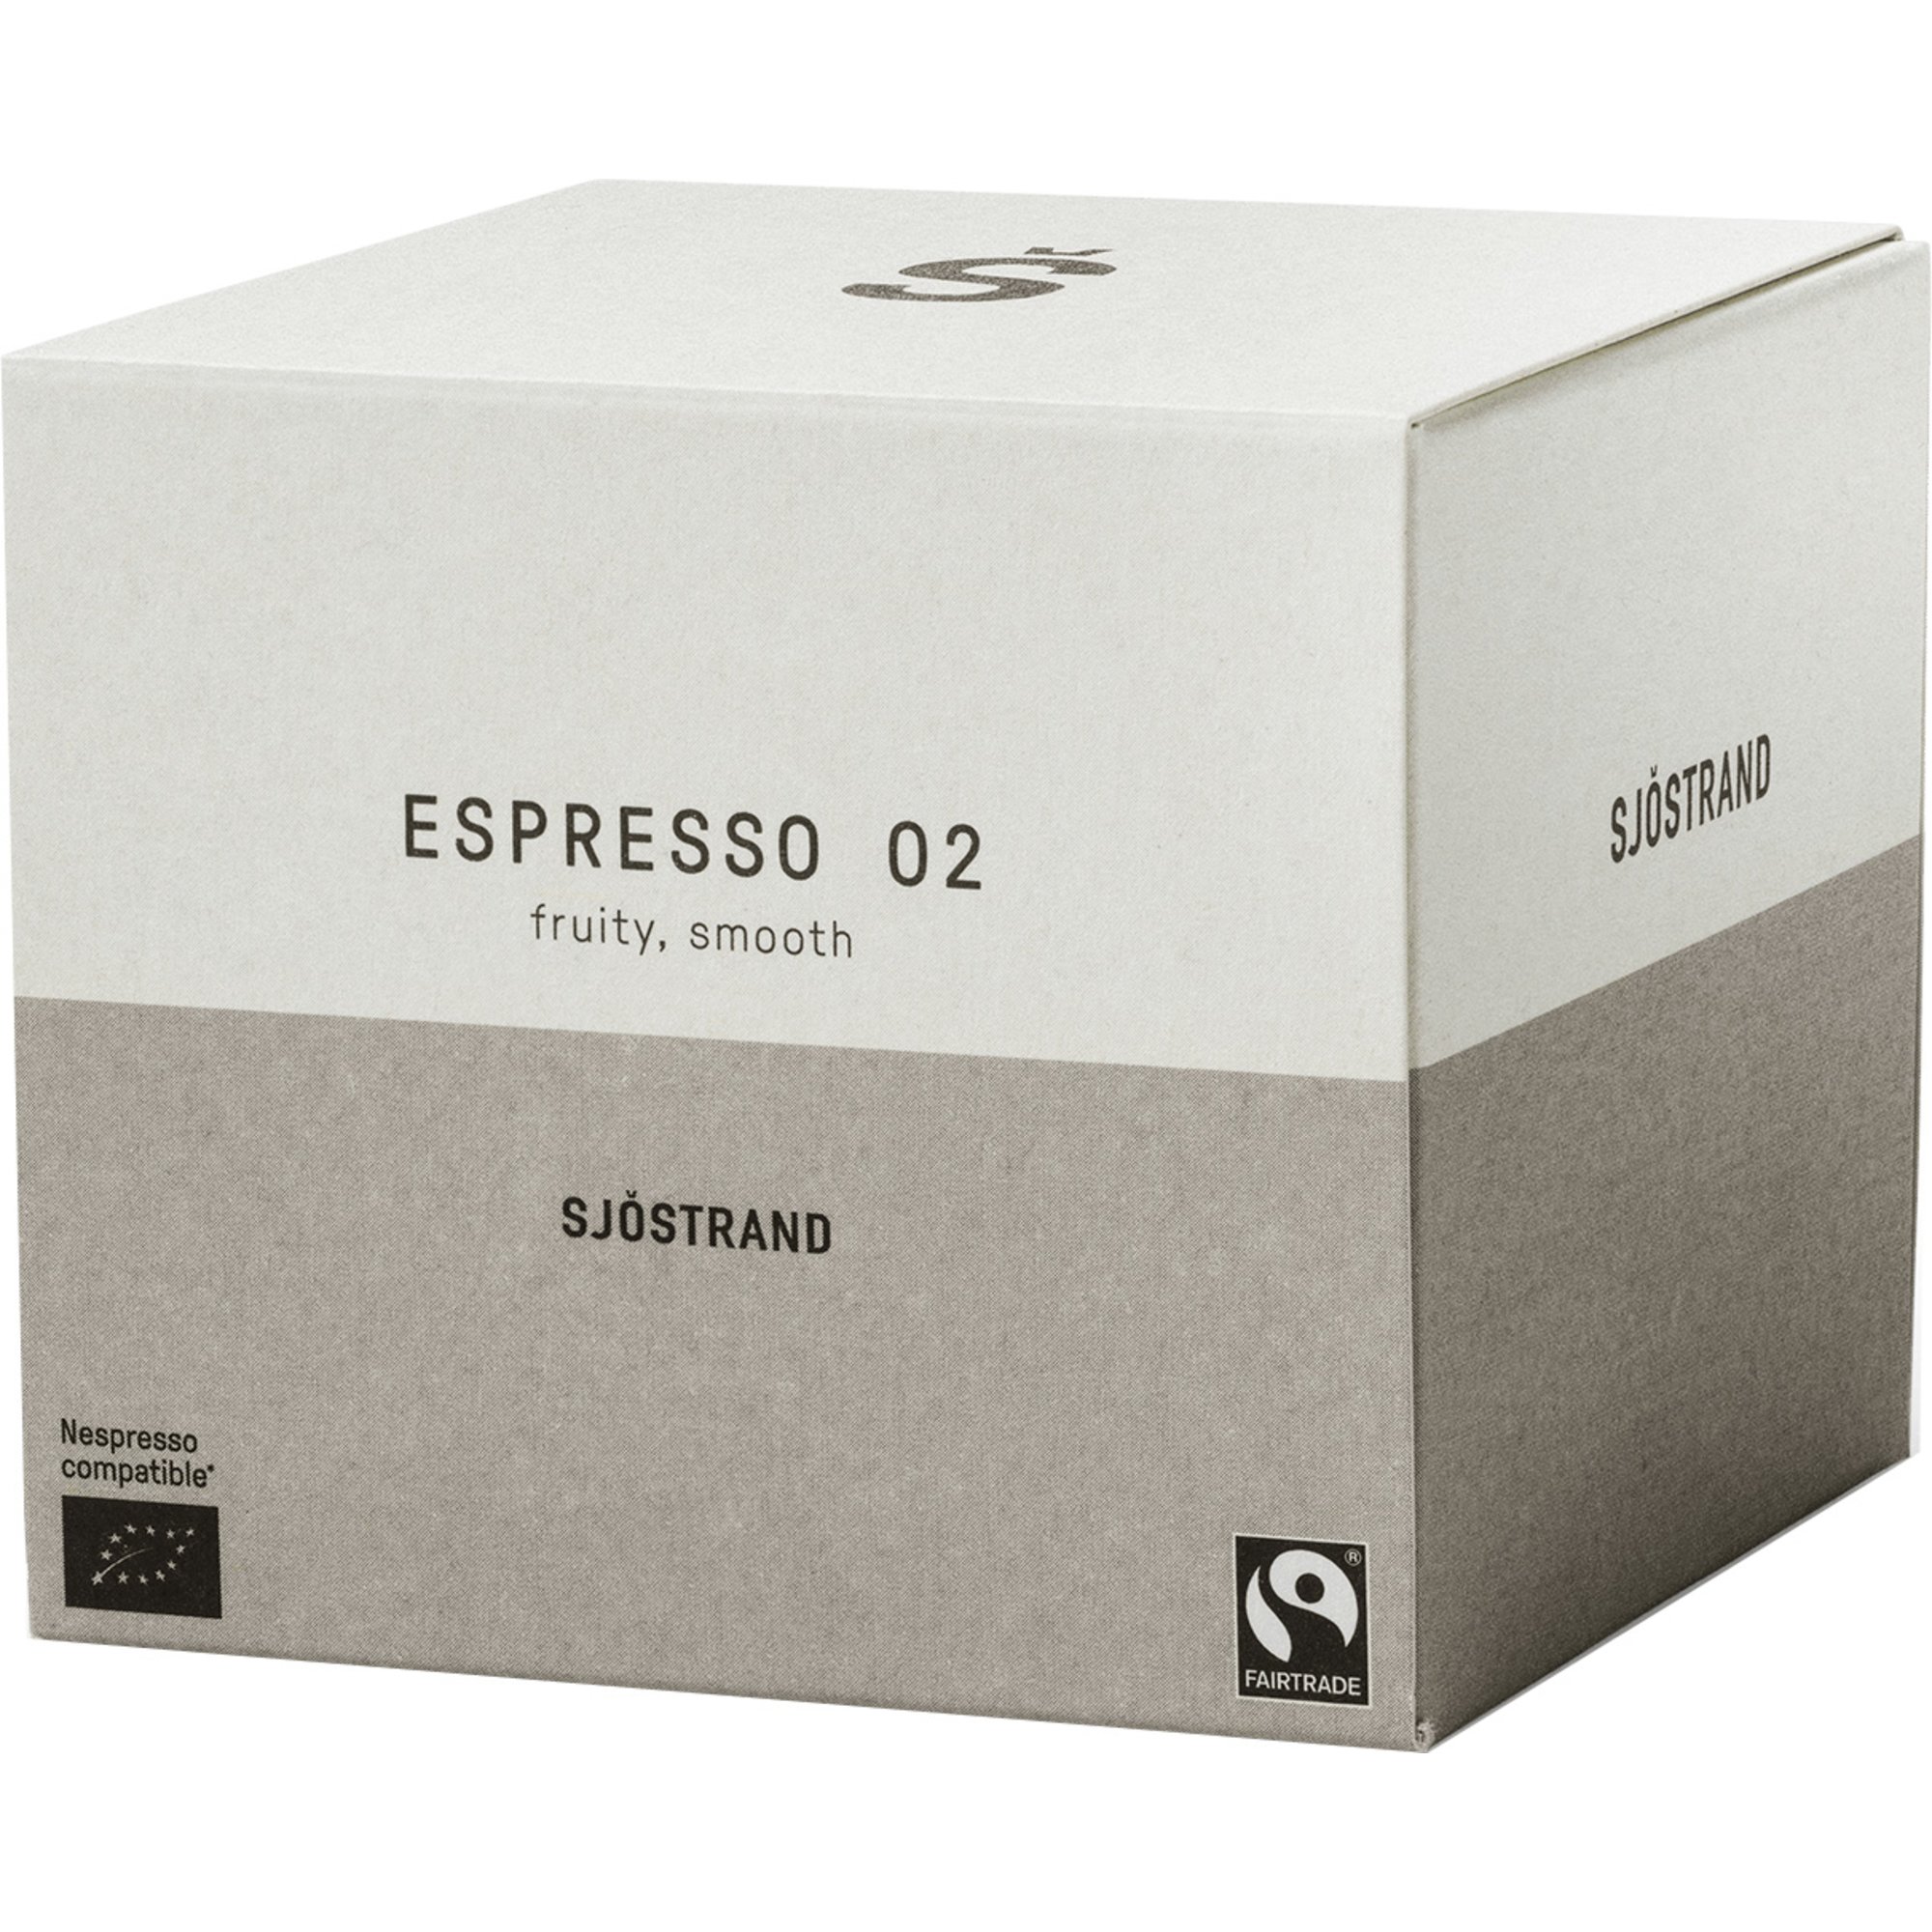 Bilde av Sjöstrand N°2 Espresso Kapsler, 10-pack